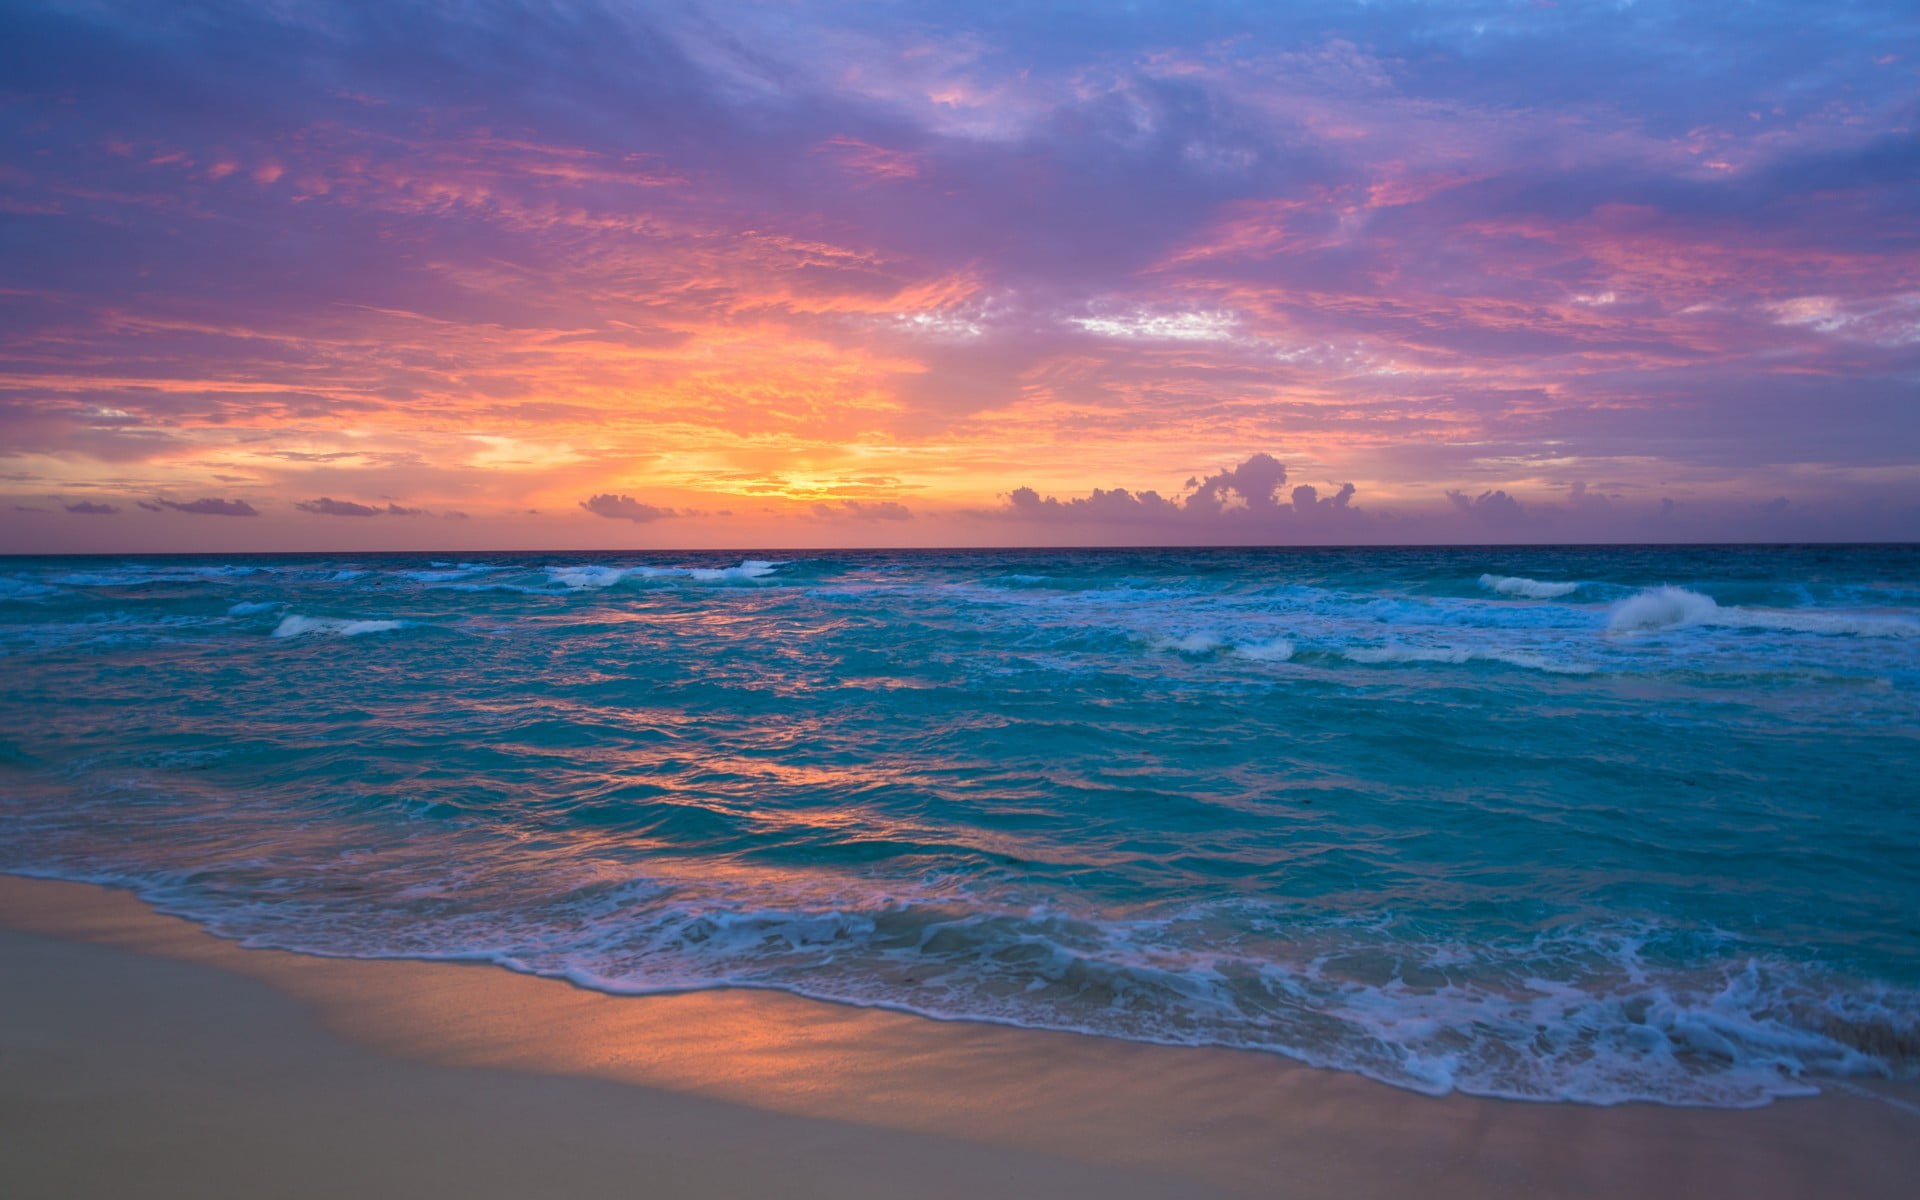 Bãi biển hoàng hôn là nơi lý tưởng để tận hưởng một buổi tối đẹp với mặt trời lặn thanh bình. Hình ảnh bãi biển hoàng hôn sẽ khiến bạn thích thú với ánh nắng vàng rực rỡ, bầu trời đỏ rực và đại dương vô tận.